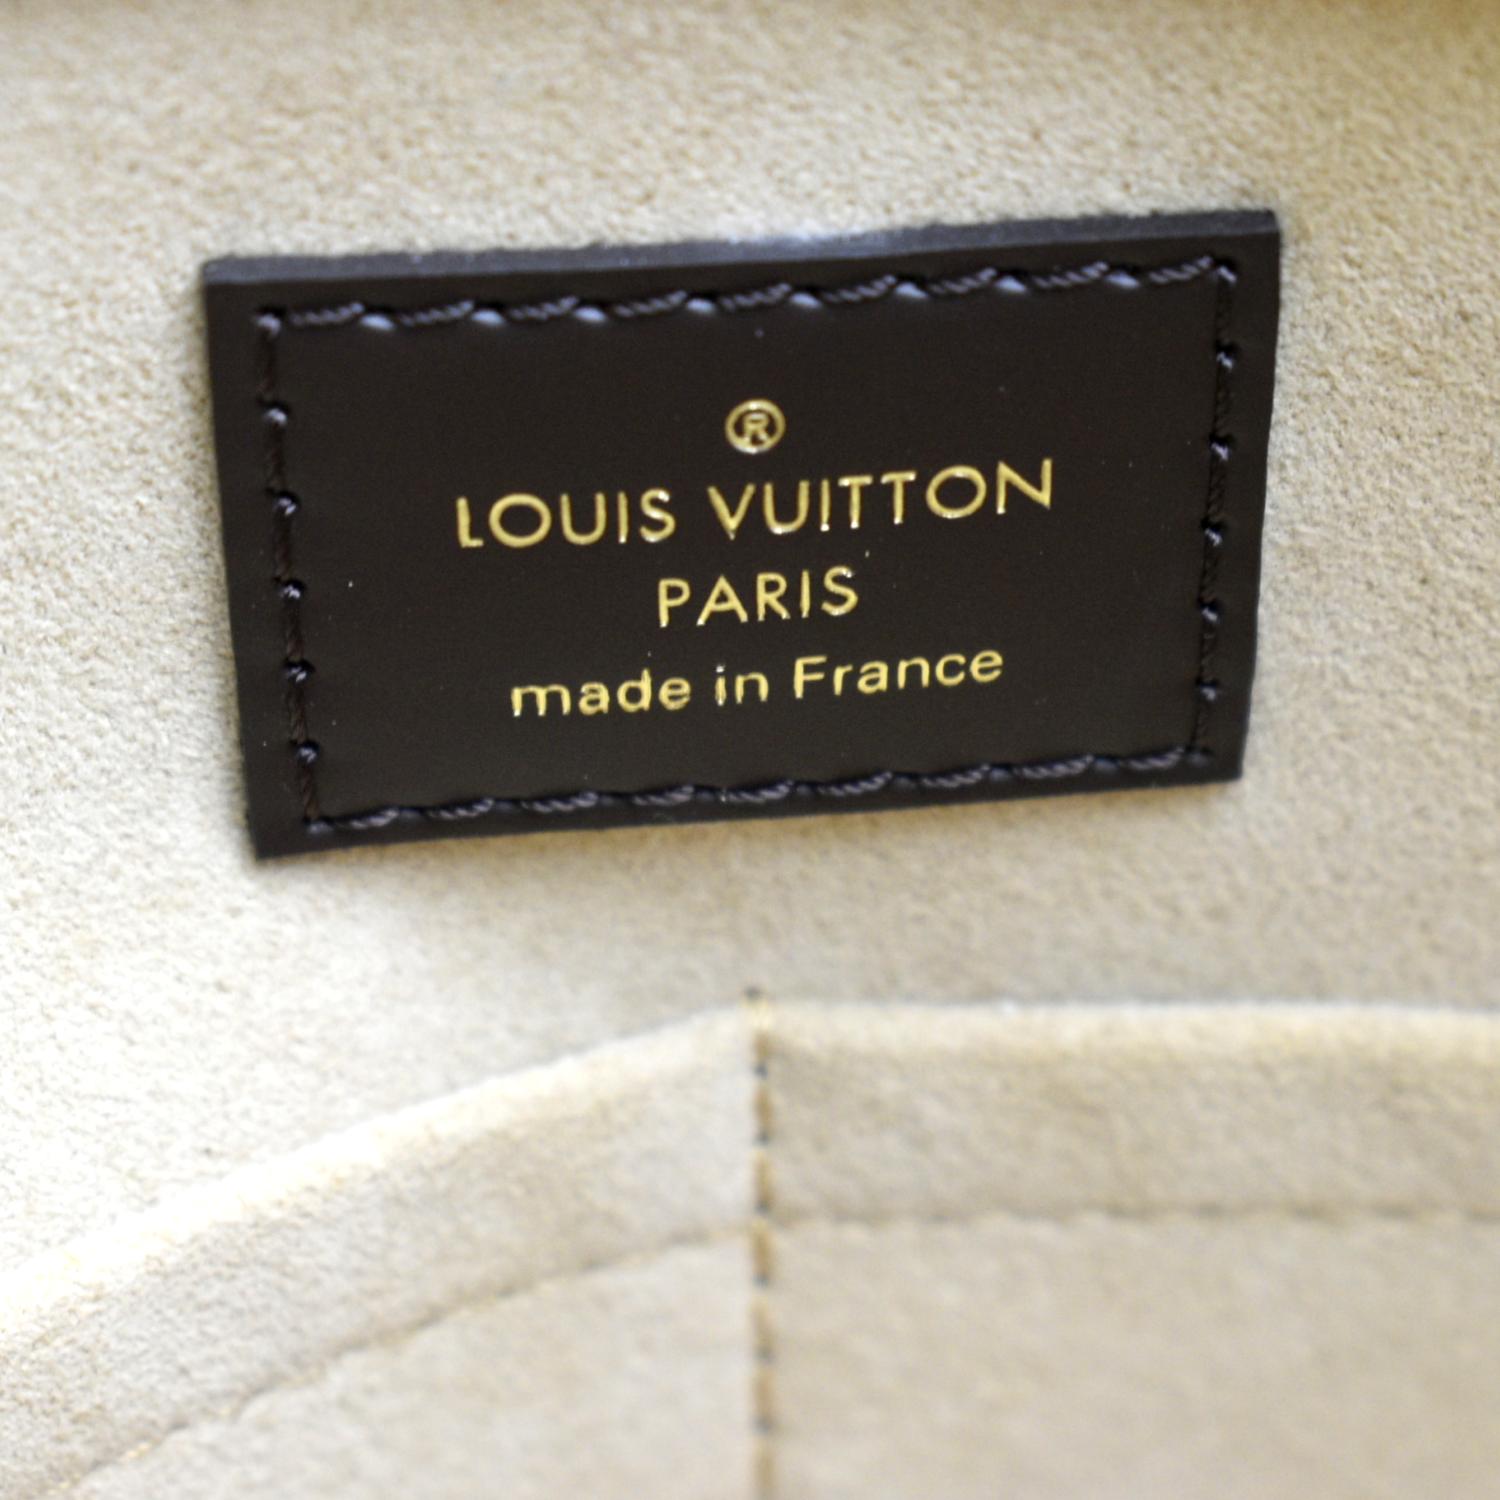 Louis Vuitton Jersey Creme Cream Damier Ébène Canvas Tote